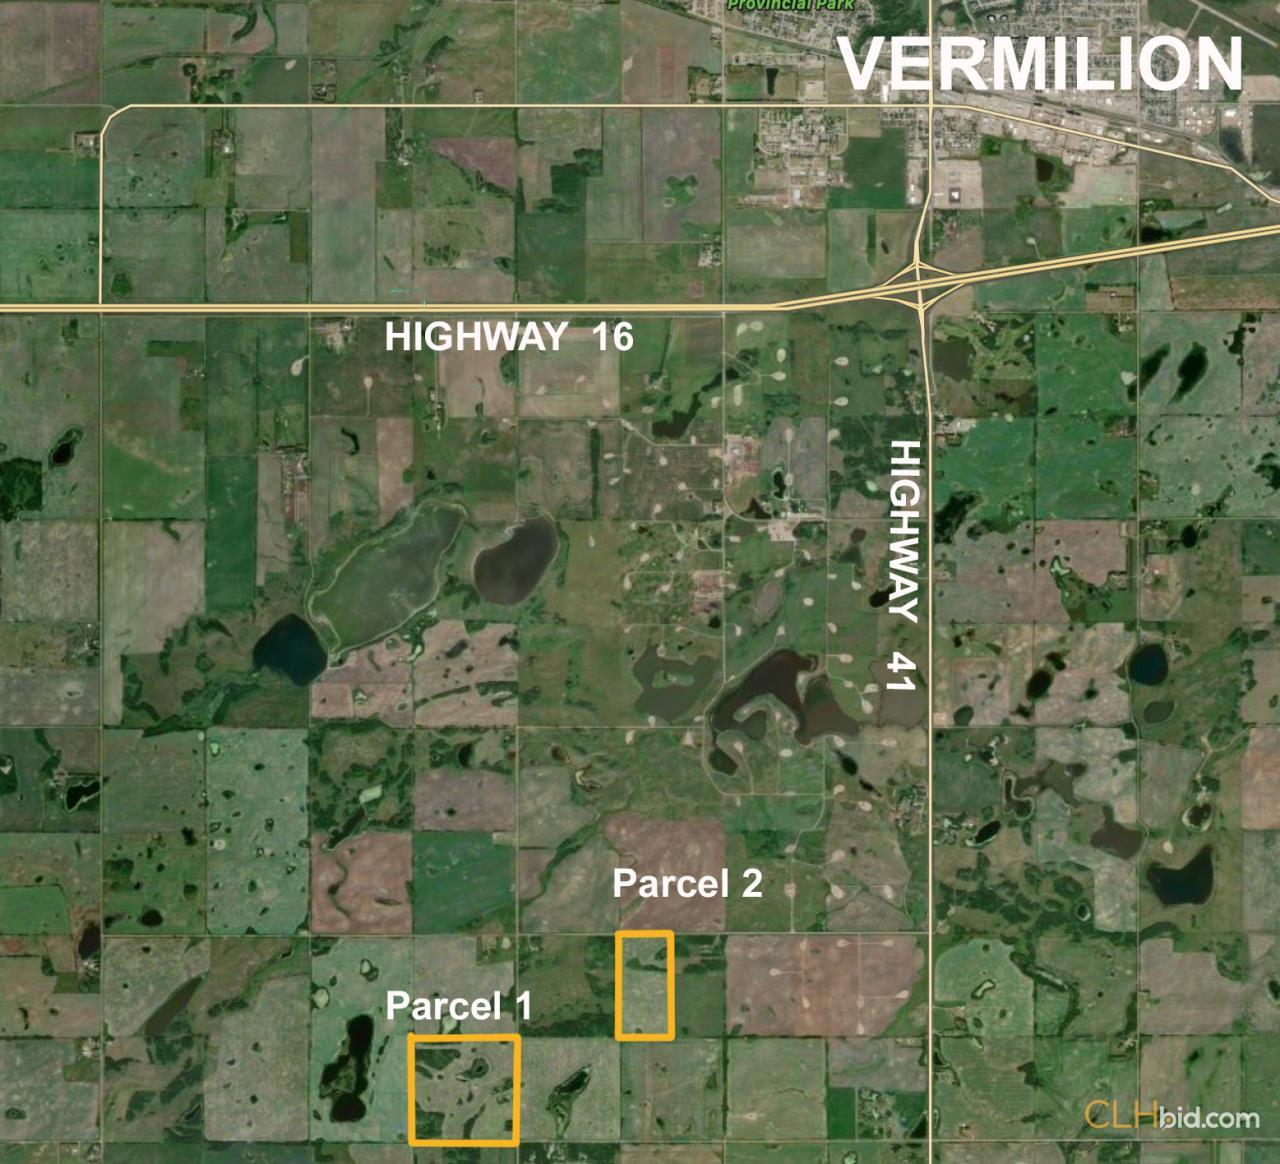 Map of The Vermilion 240 - Vermilion, AB